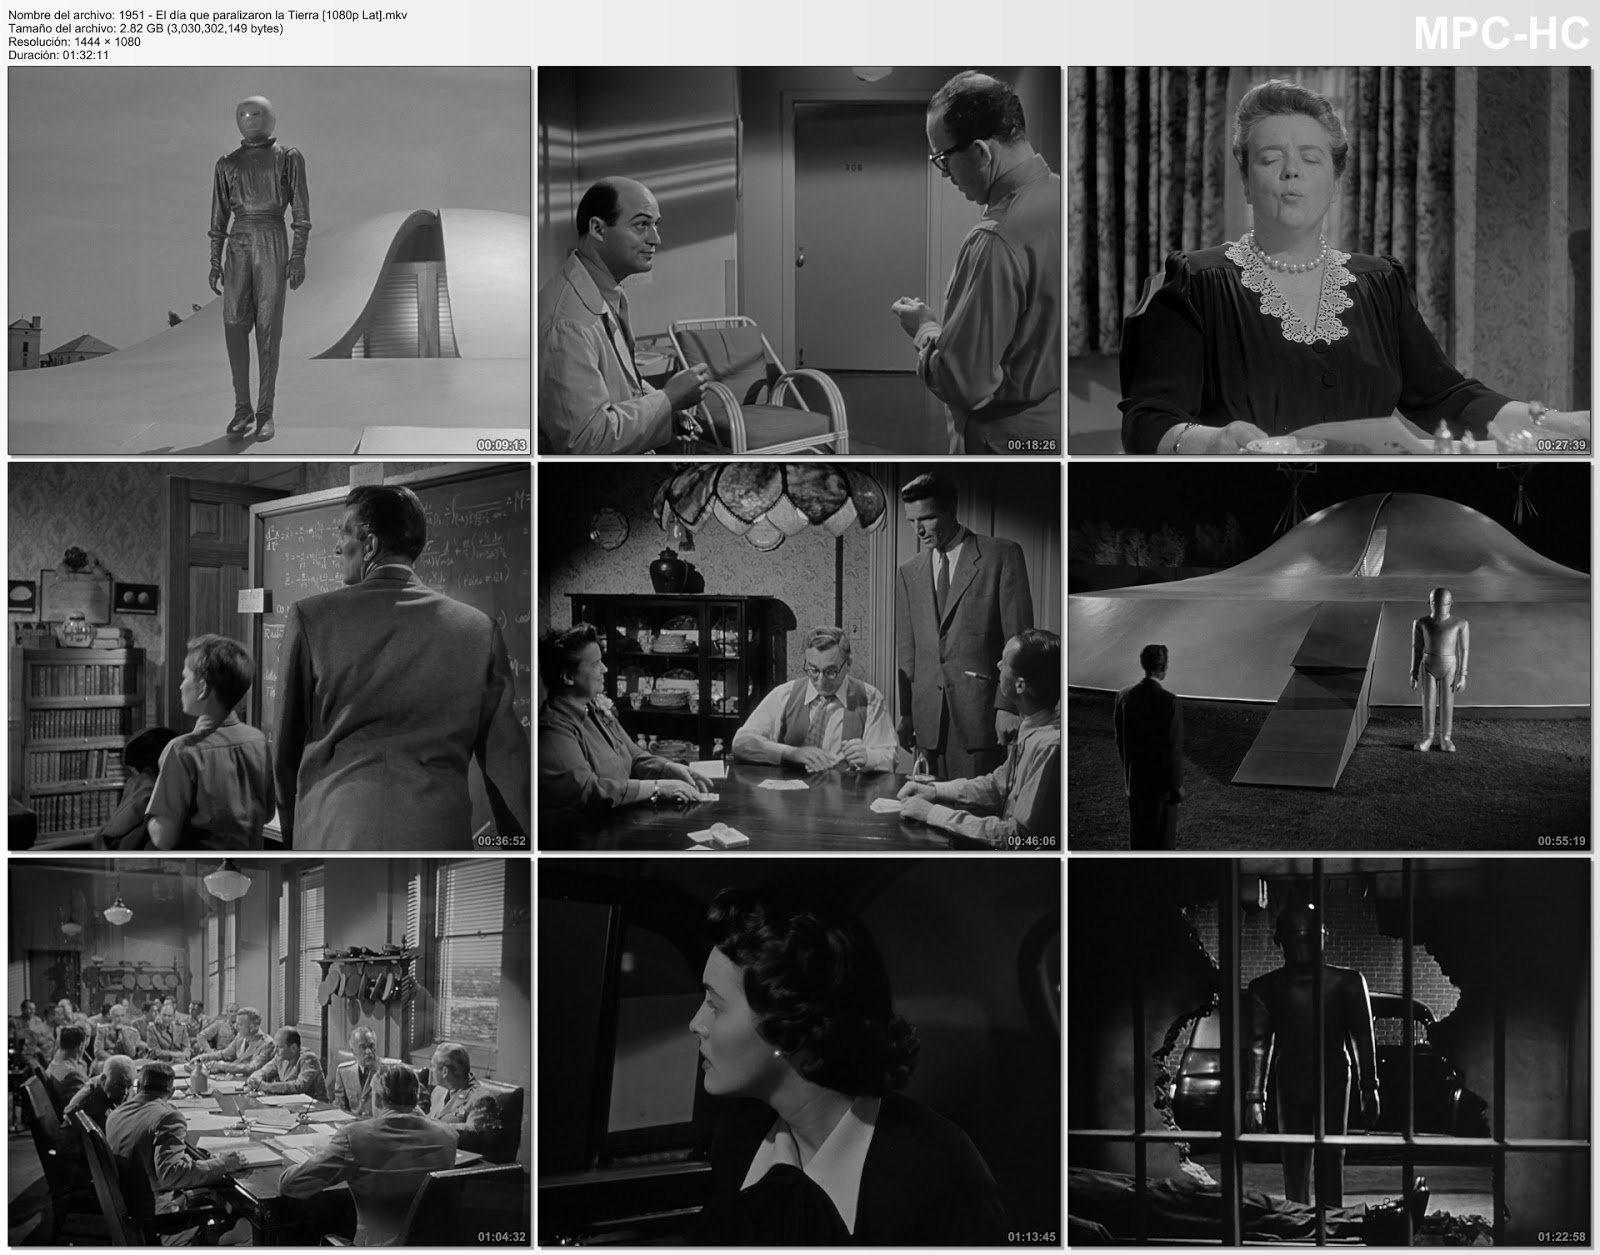 El día que paralizaron la Tierra (1951)|1080p|Lat